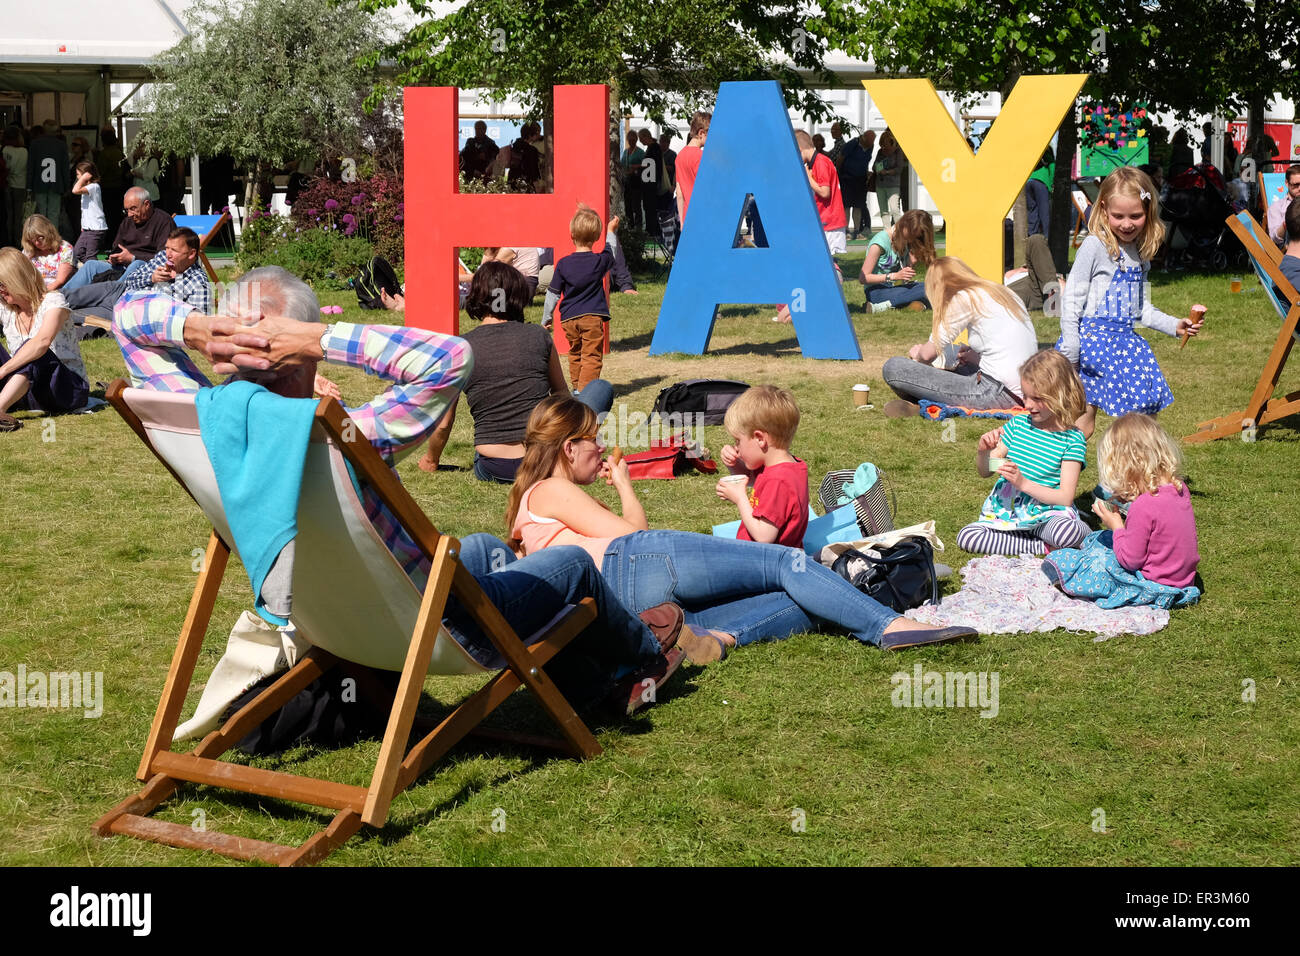 Hay Festival, Powys, Wales - Hay 2015 - demi terme amusant pour les enfants au Hay Festival qu'ils courent autour de la pelouse et jouer sur le gigantesque HAY signe. Le festival littéraire a beaucoup de sessions et les événements par les auteurs de livres pour enfants pour les jeunes lecteurs à y participer. Banque D'Images